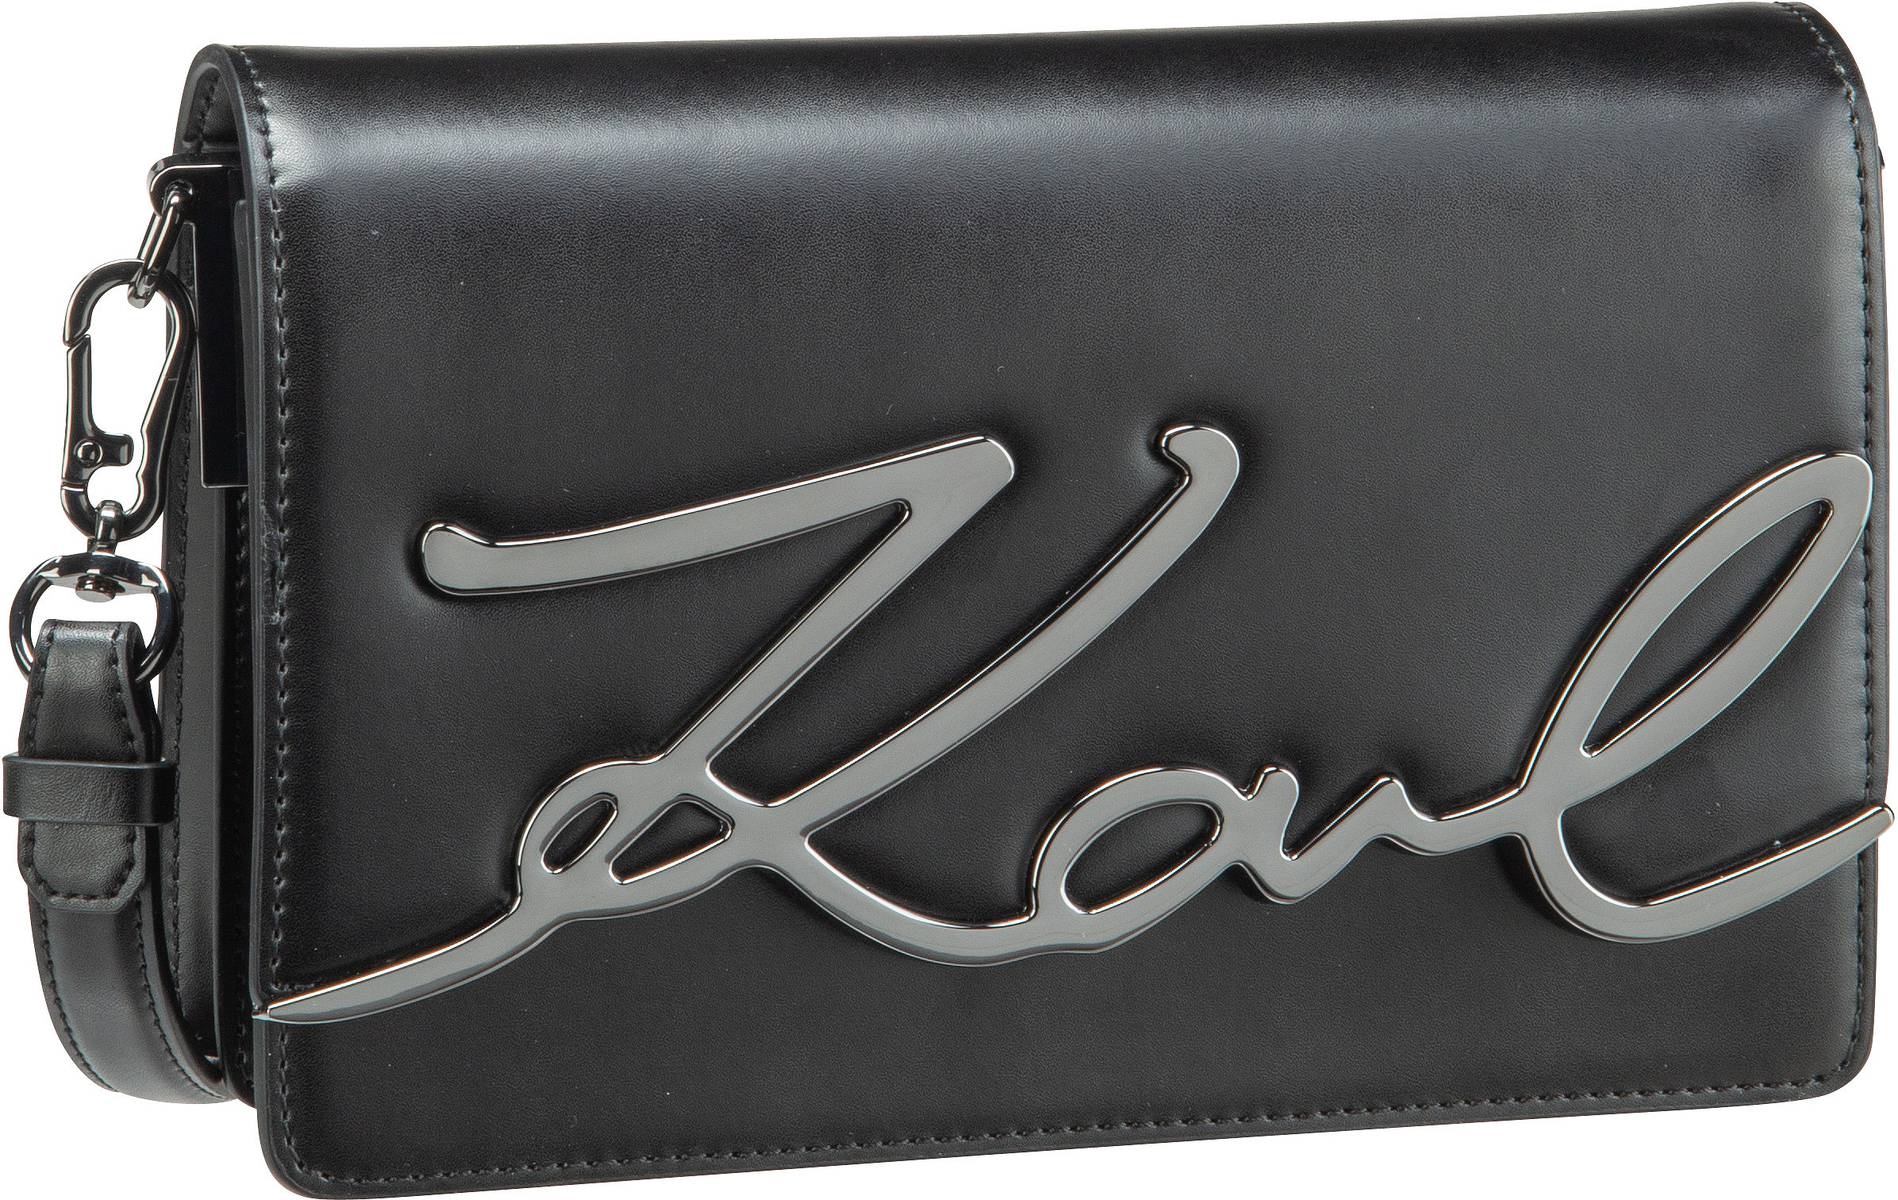 Karl Lagerfeld K/Signature Shoulderbag - Black/Gun Metal